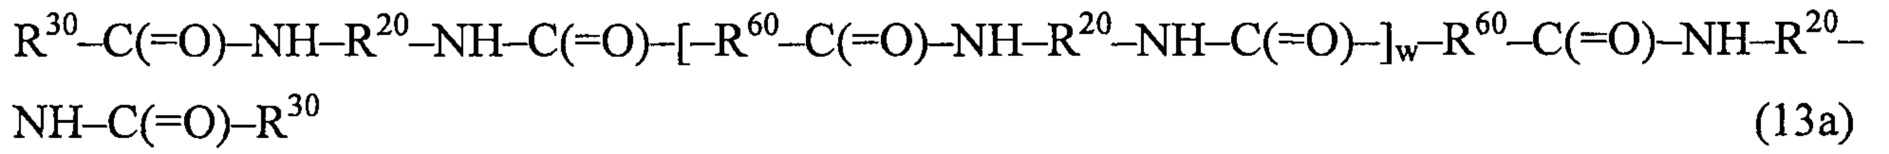 Муравьиная кислота и гидроксид кальция. 2 Хлорпропан и гидроксид натрия Водный. 1 4 Дихлорбутан. 1,4-Дихлорбутан + ZN. 2-Гептадиен2,4 + h2.